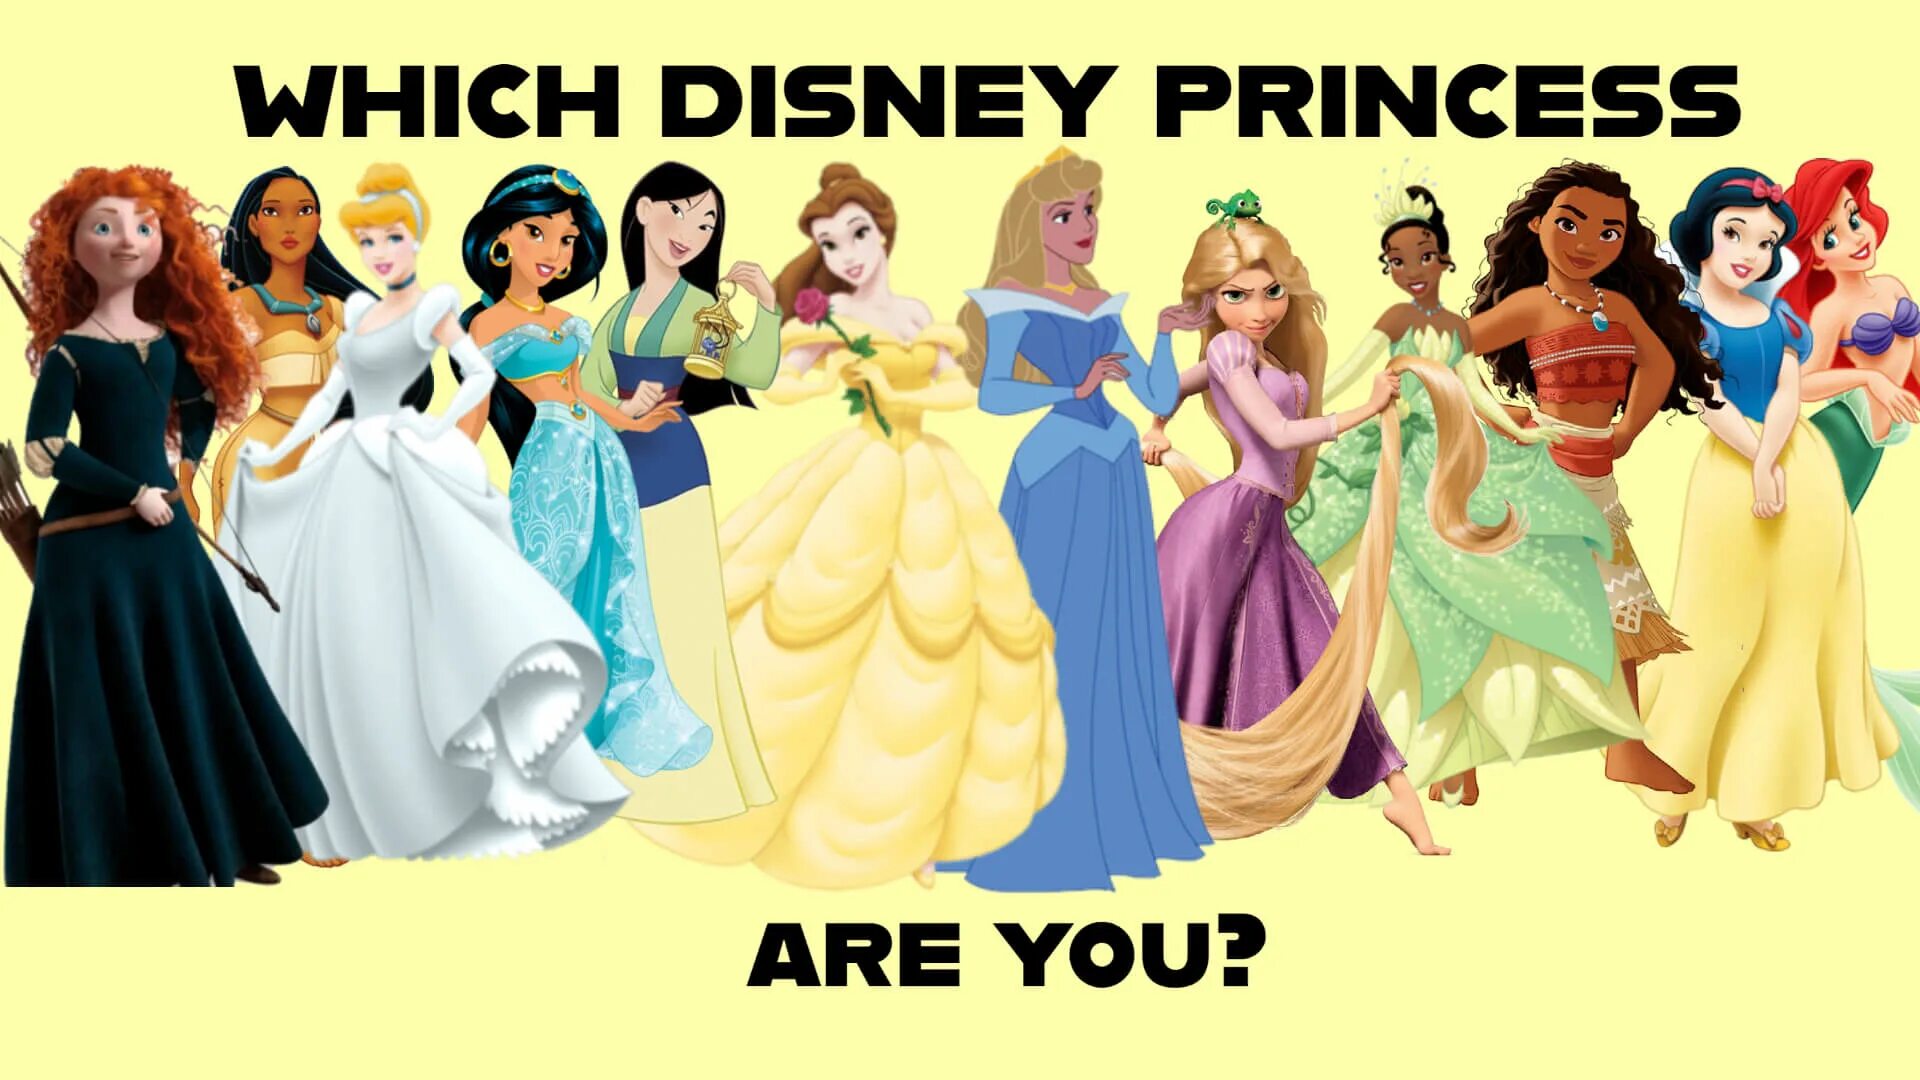 Принцесса перевод на английский. Принцессы Дисней имена. Афиша Дисней 2021 принцессы. Are you a Disney Princess.